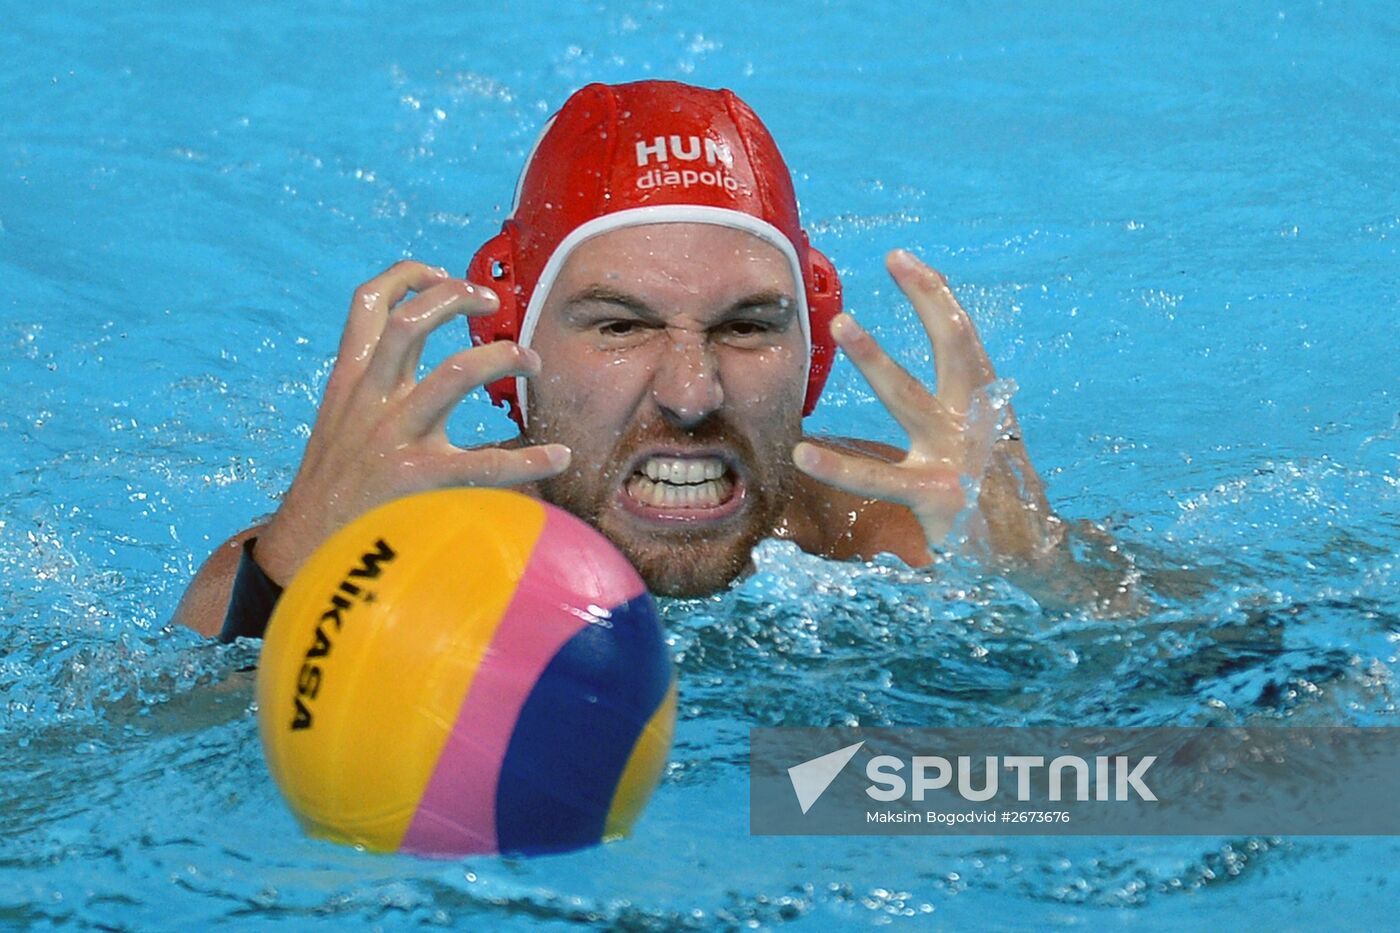 2015 FINA World Championships. Water polo. Men. Hungary vs. Italy